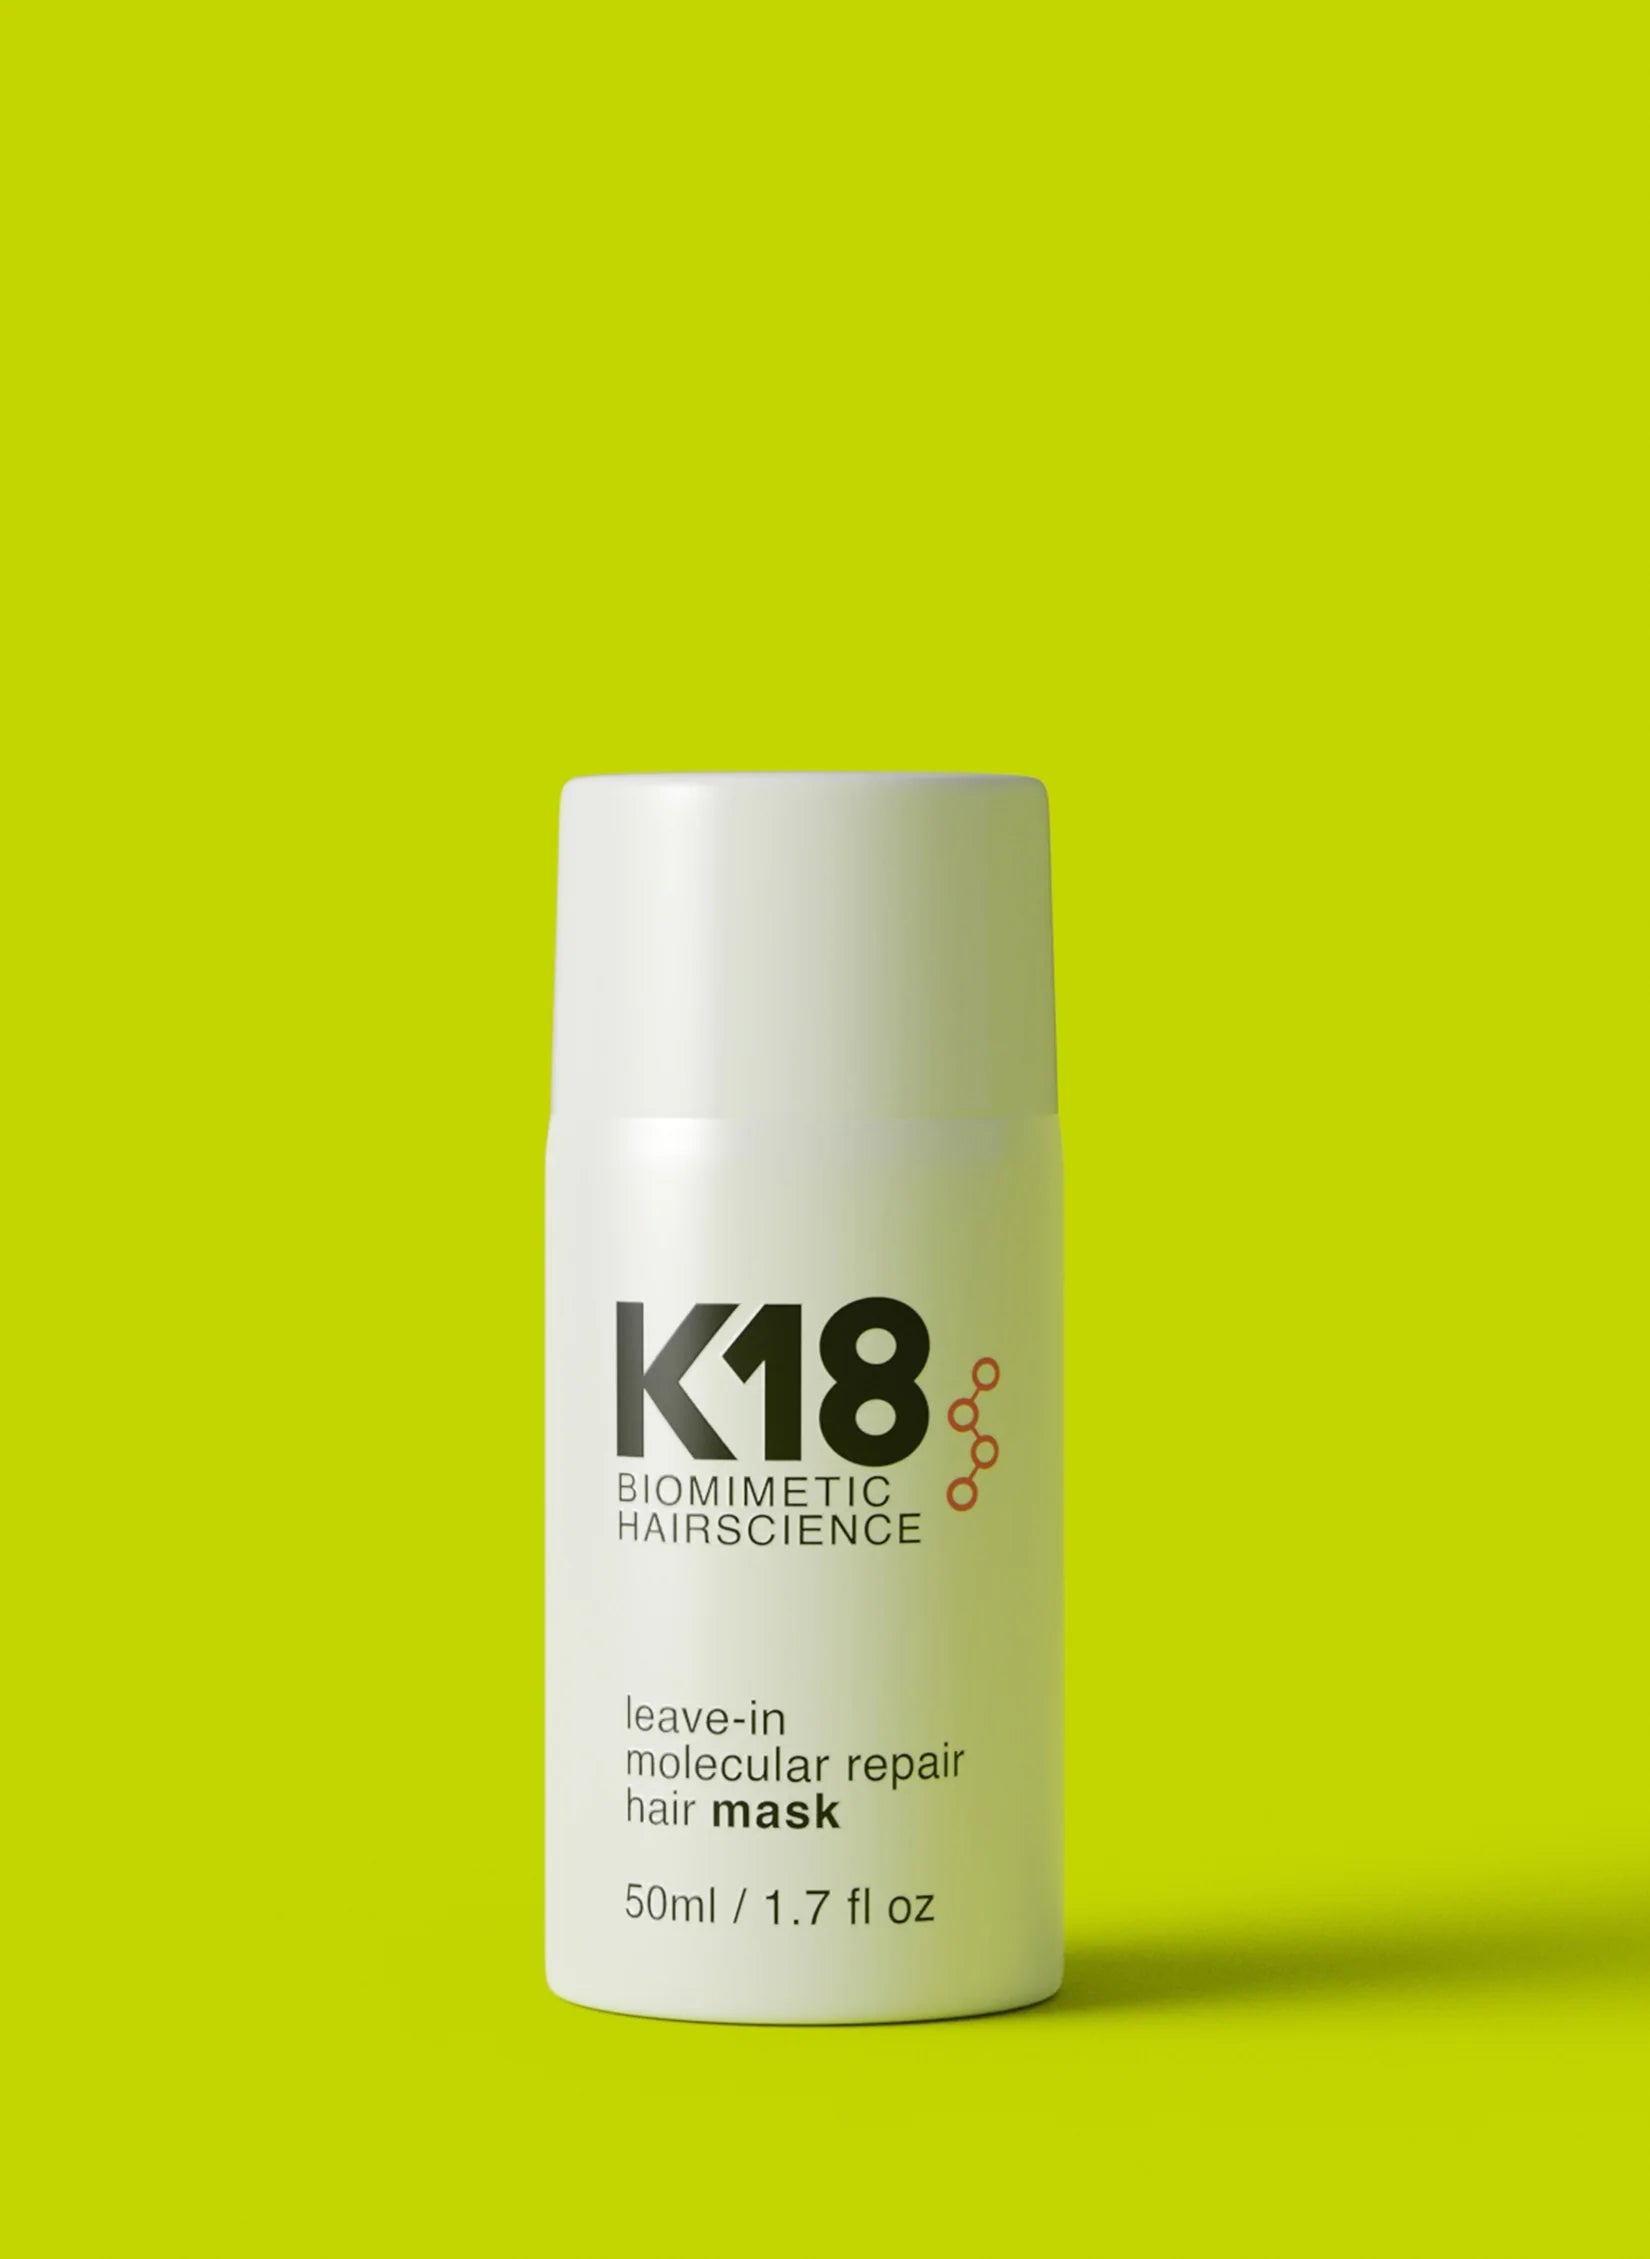 K18 Leave In Molecular Repair Mask